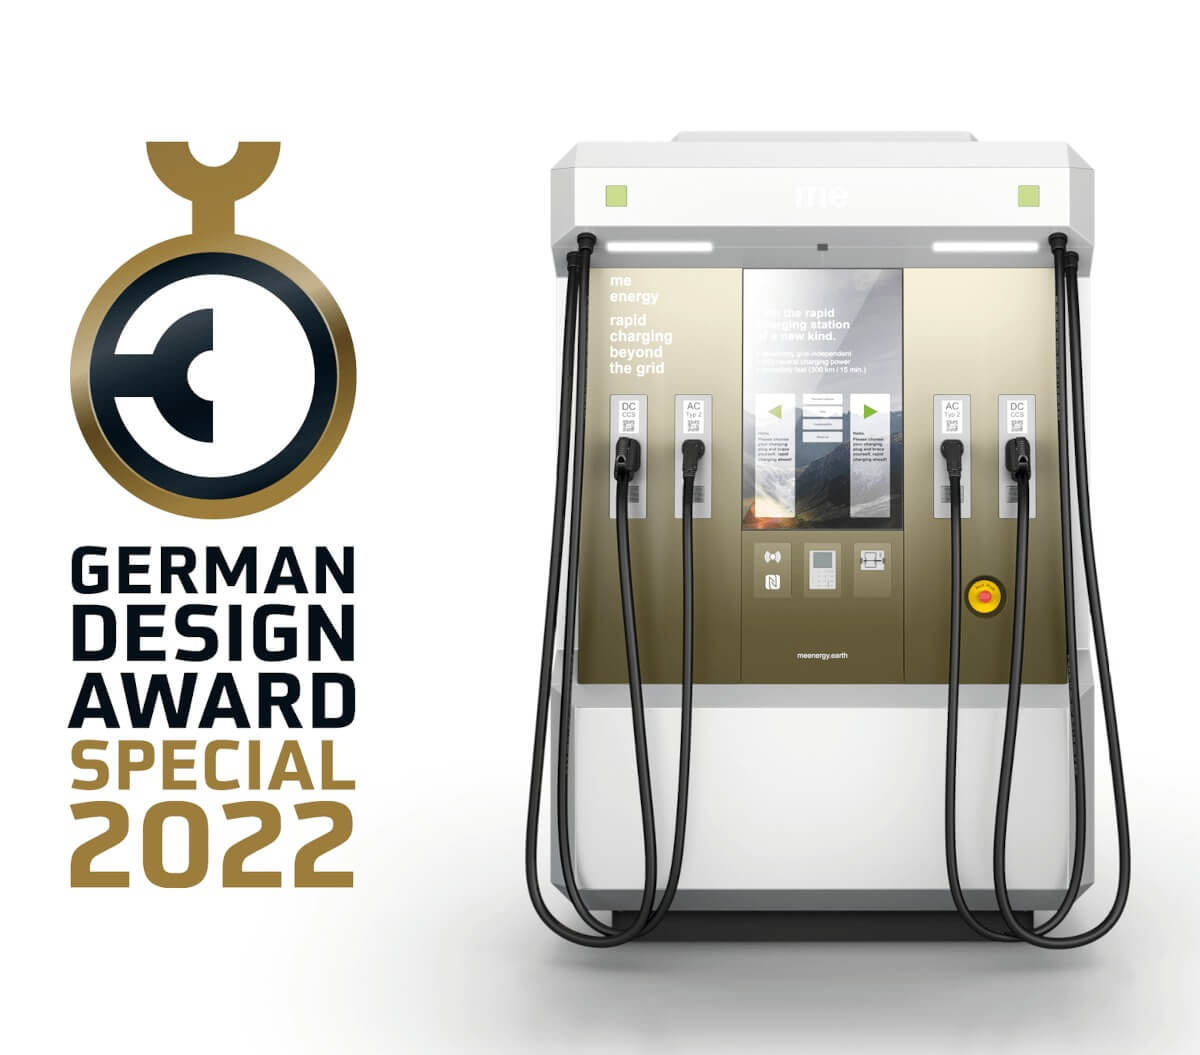 Der Rapid Charger 150 wird mit dem German Design Award 2022 ausgezeichnet